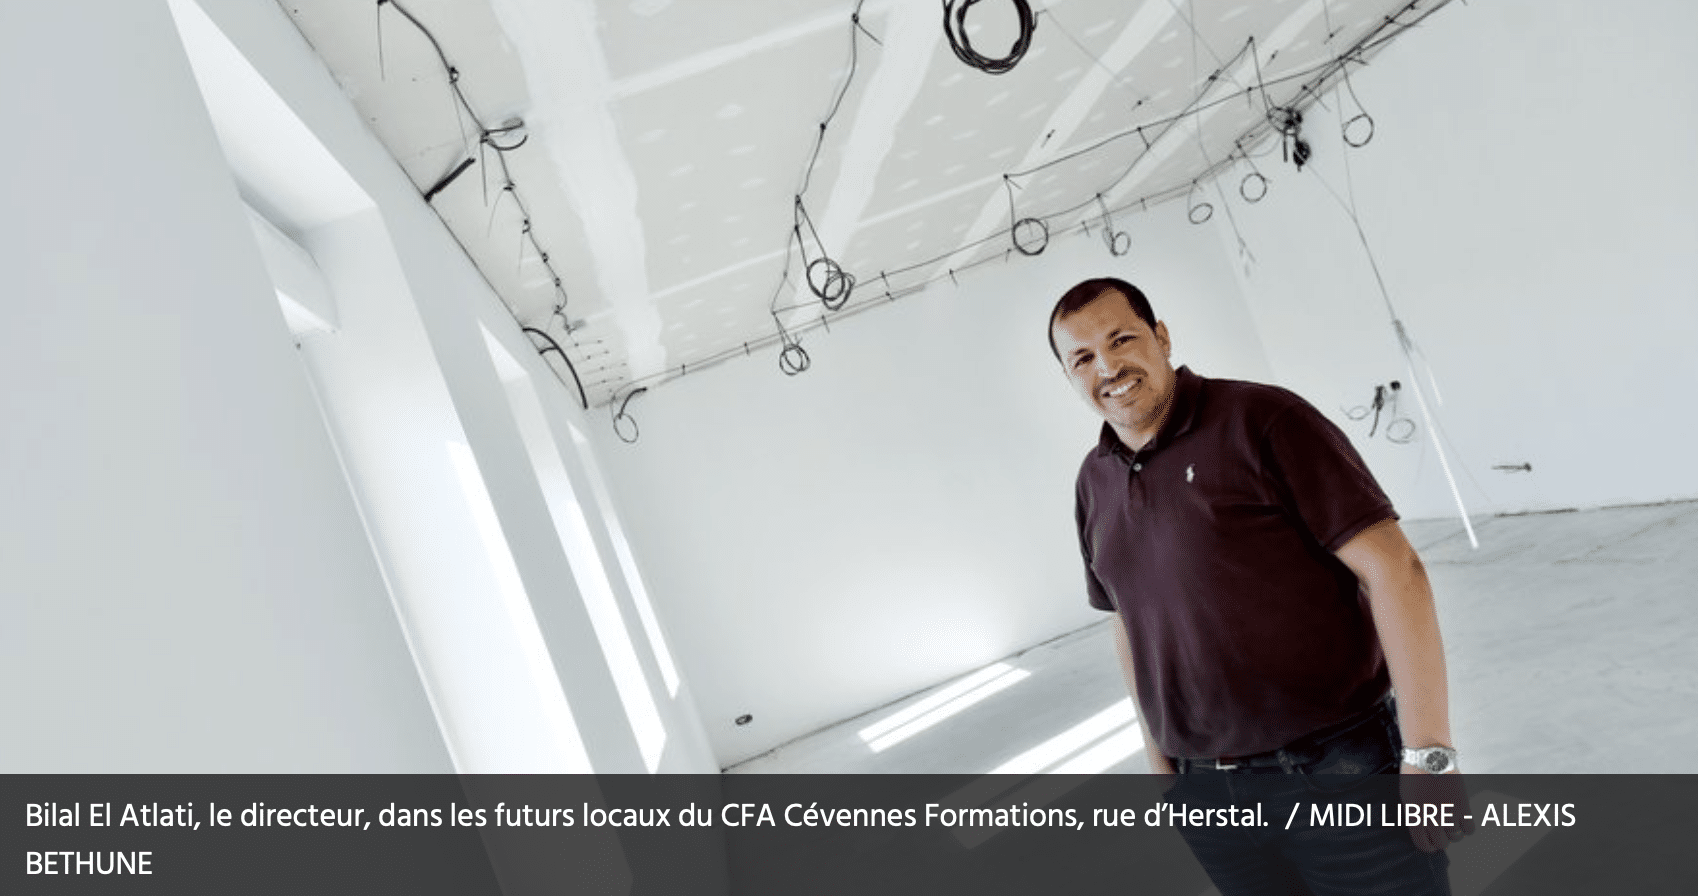 Le CFA Cévennes Formations mis à l’honneur dans le Midi Libre pour sa nouvelle licence en entrepreneuriat !